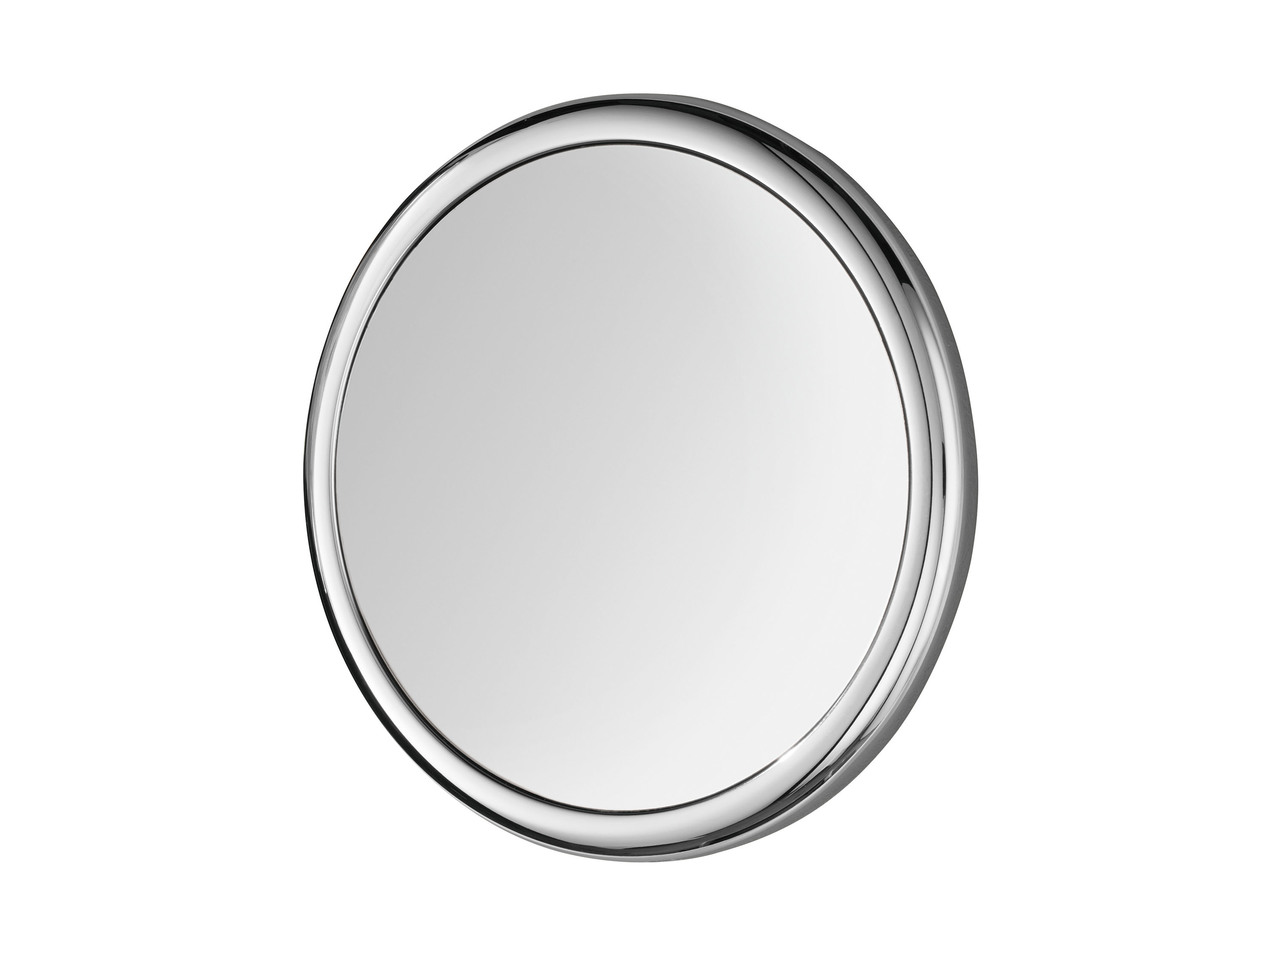 MIOMARE(R) Espelho de Maquilhagem